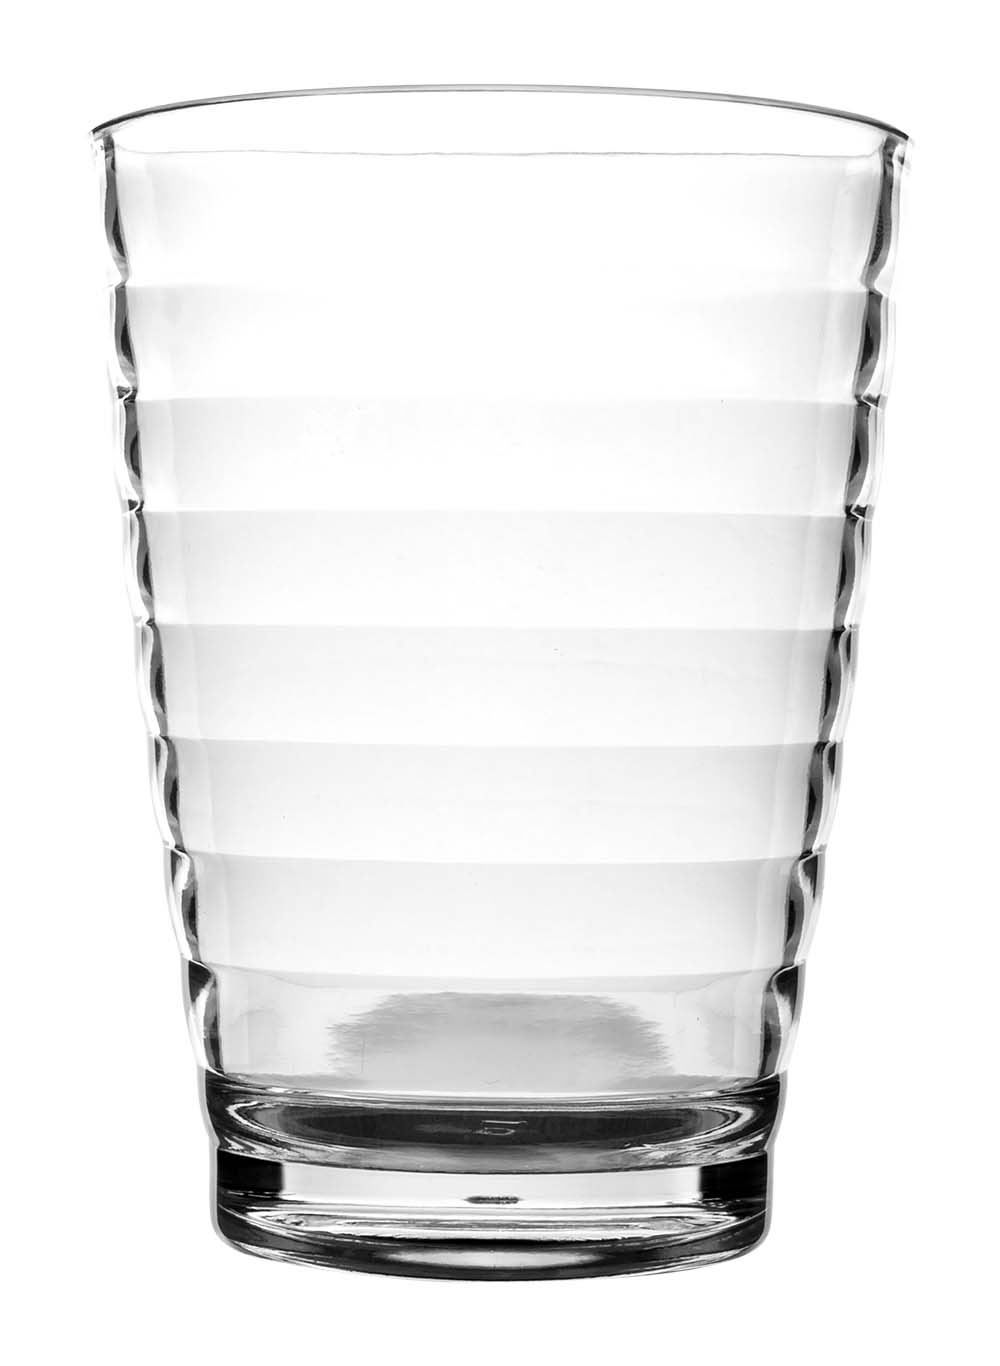 6101396 Een extra stevig en luxe limonadeglas. Gemaakt van 100% polycarbonaat. Hierdoor is het glas vrijwel onbreekbaar, lichtgewicht en kraswerend. Ook is dit glas vaatwasmachinebestendig. Een set van 4 glazen.